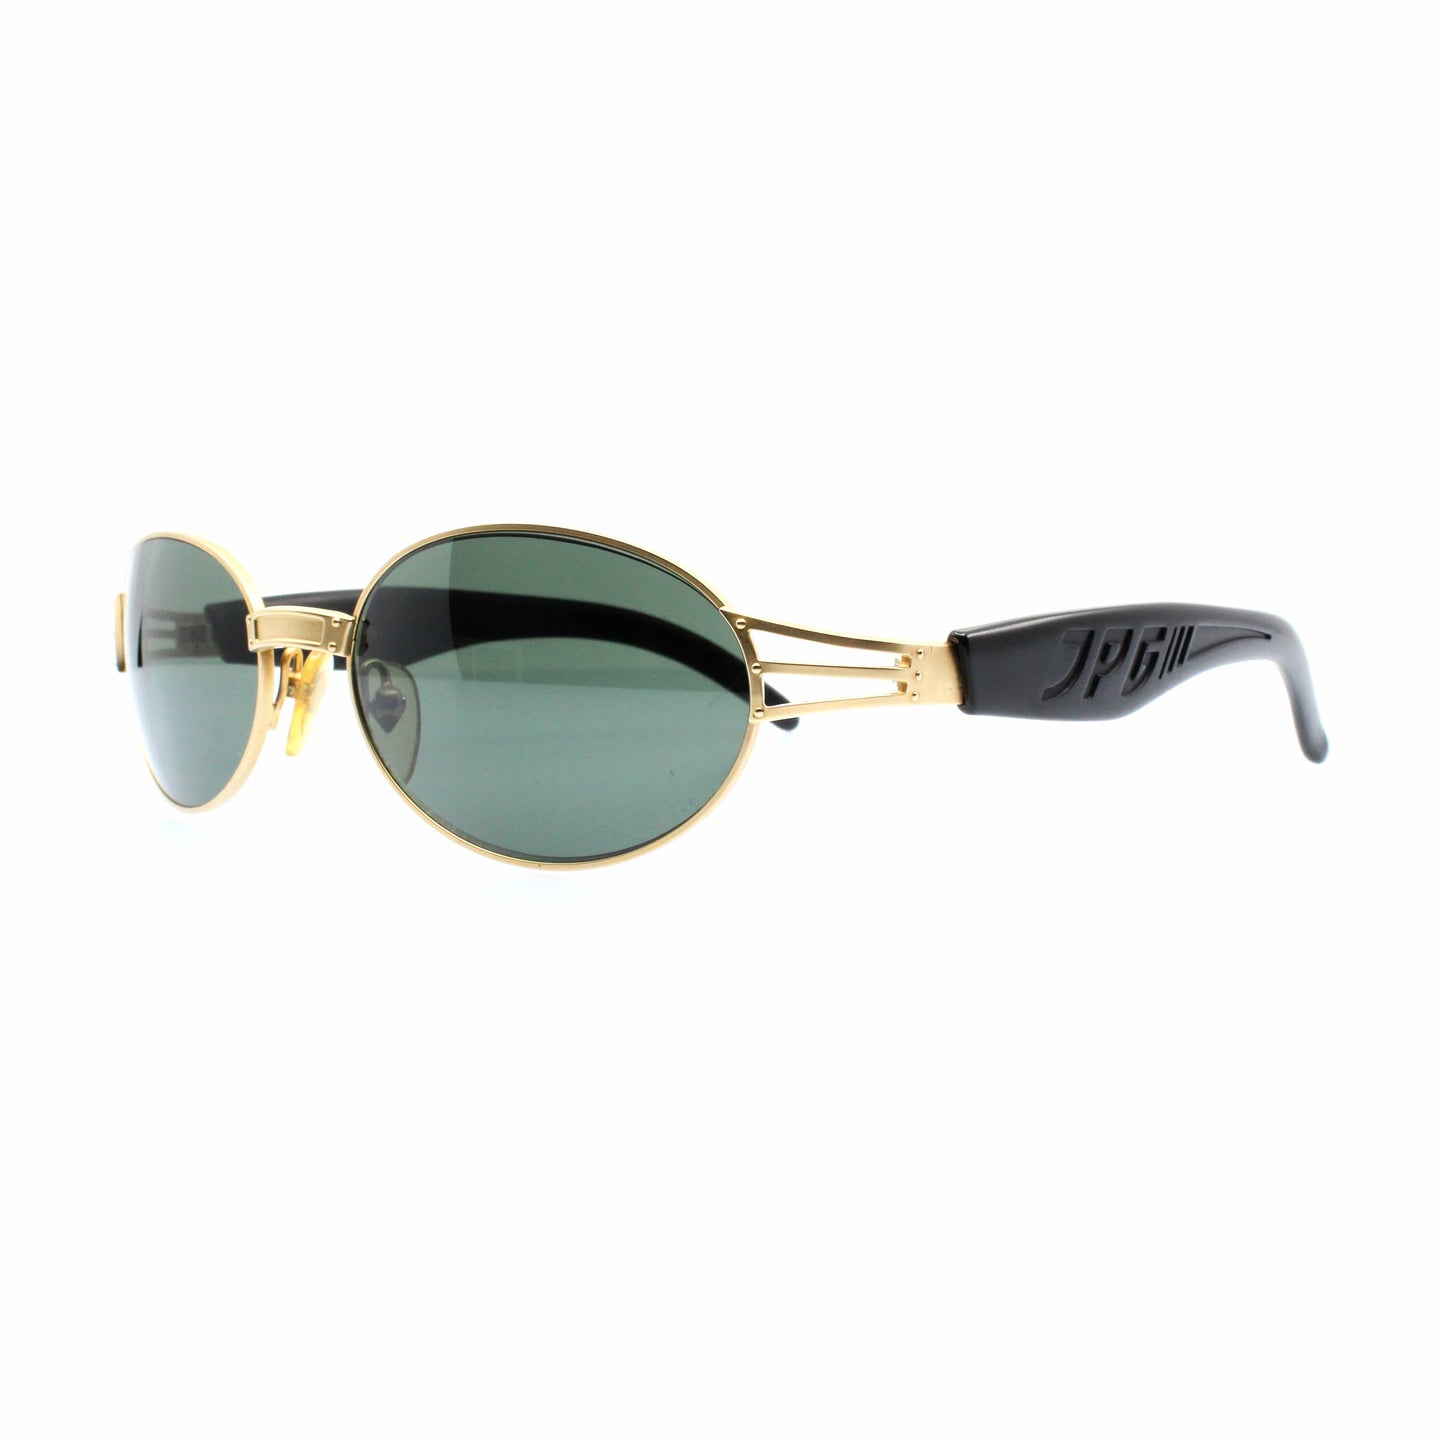 Gold Vintage Jean Paul Gaultier 58-7203 Sunglasses RSTKD Vintage